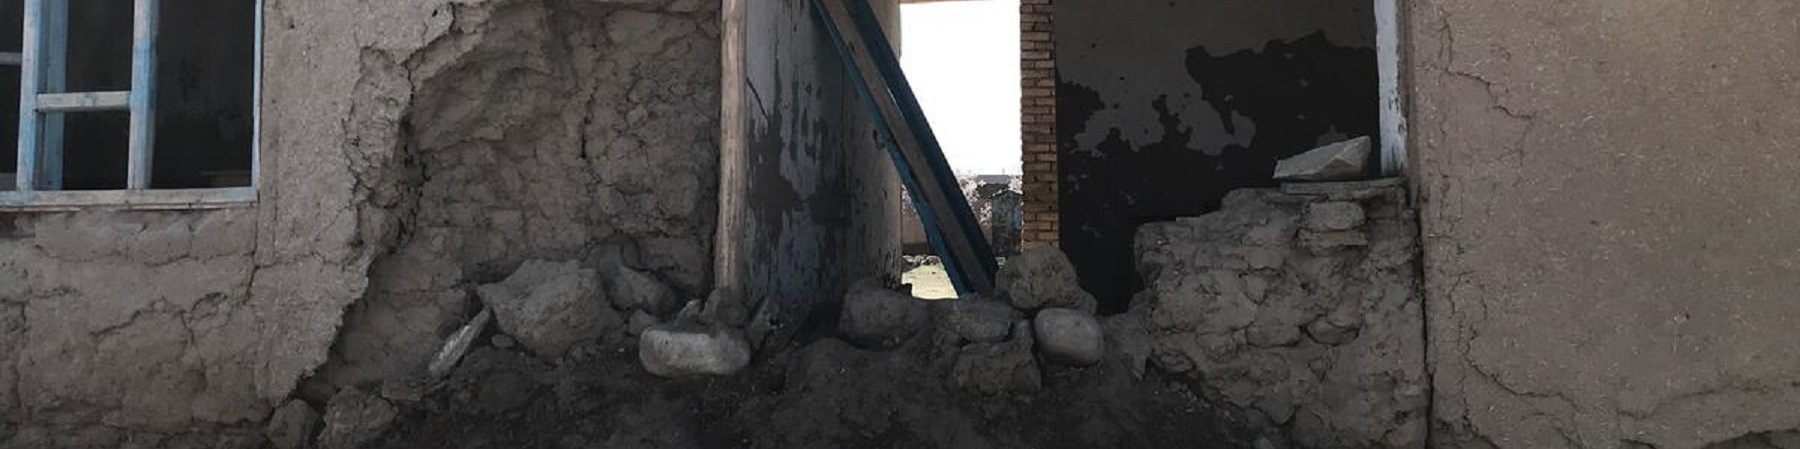 Muro di una casa distrutta dalle scosse di terremoto 